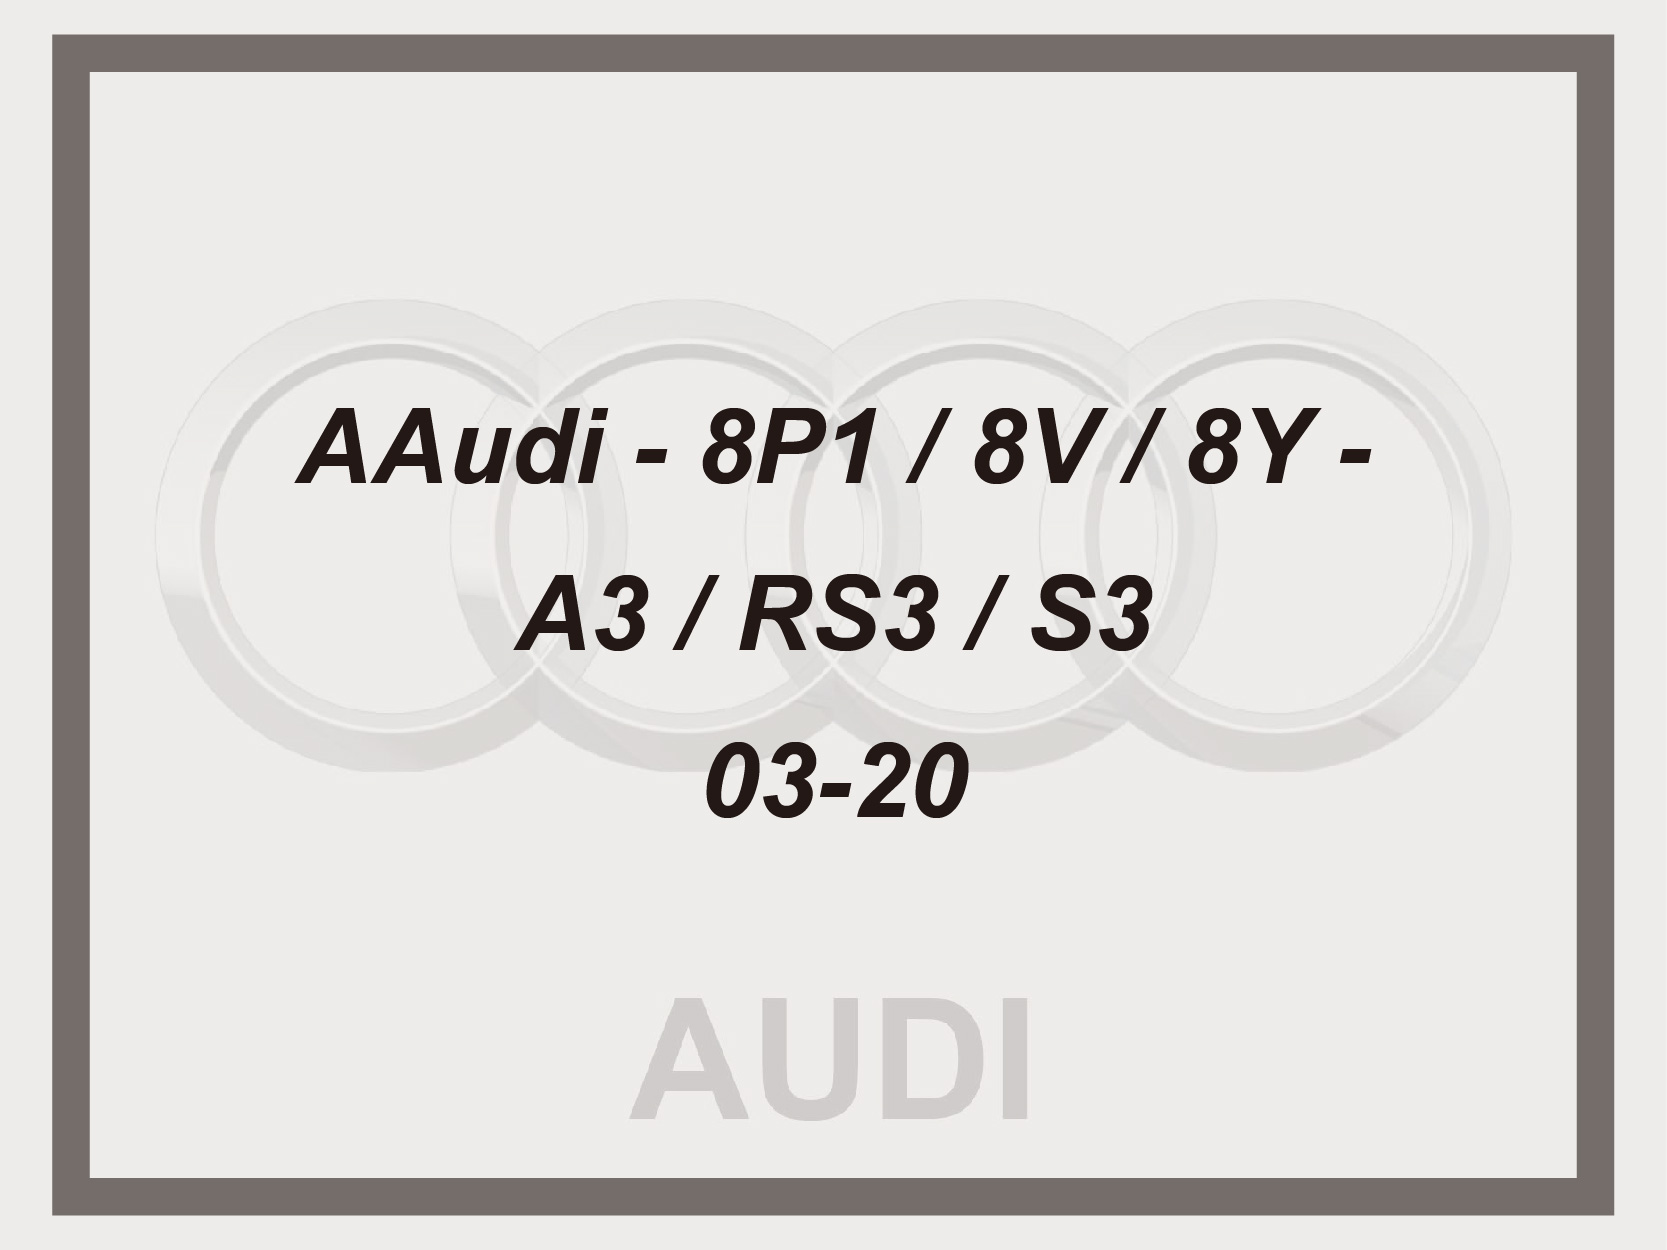 Audi - 8P1 / 8V / 8Y - A3 / RS3 / S3 - 03-20